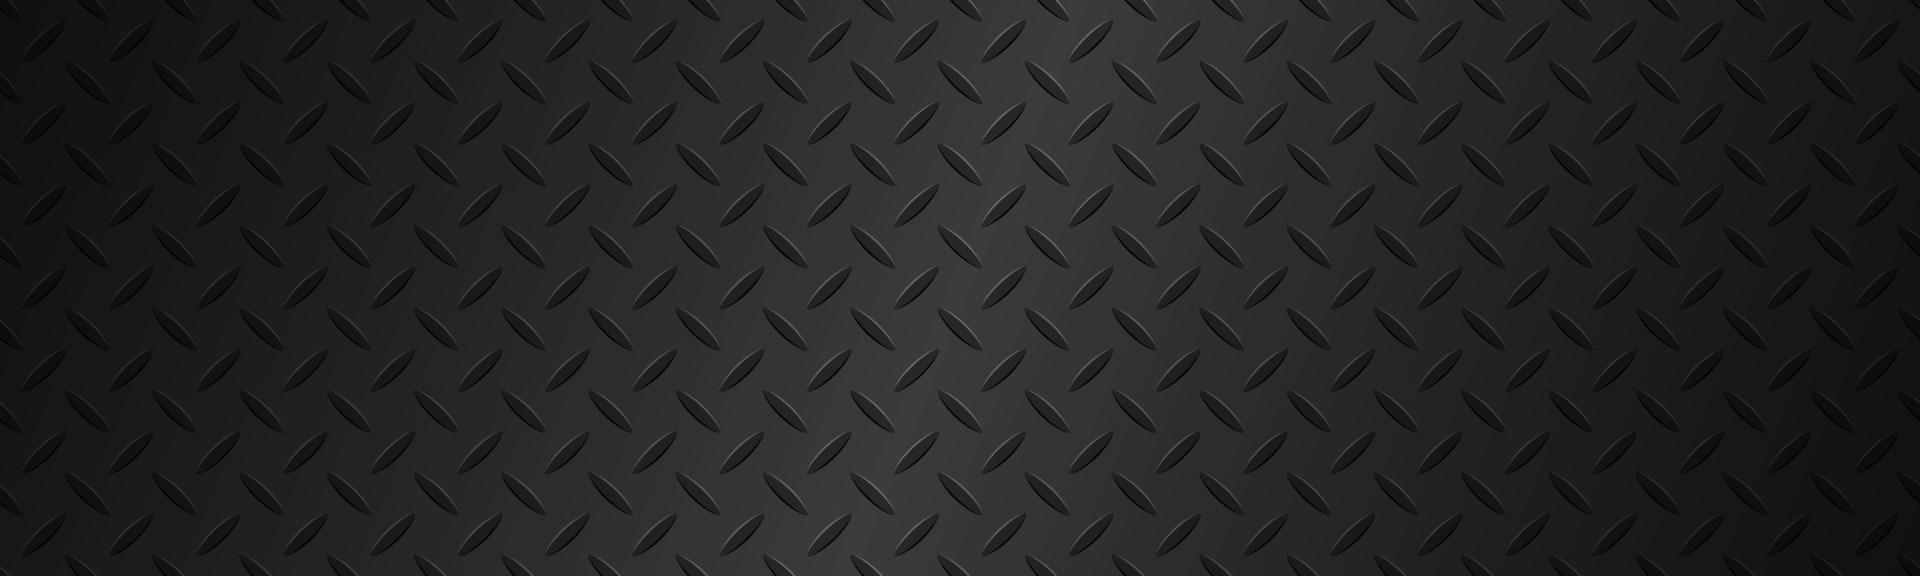 zwarte metalen plaat textuur koptekst roestvrij staal achtergrond met gradiënt moderne vector illustratie banner